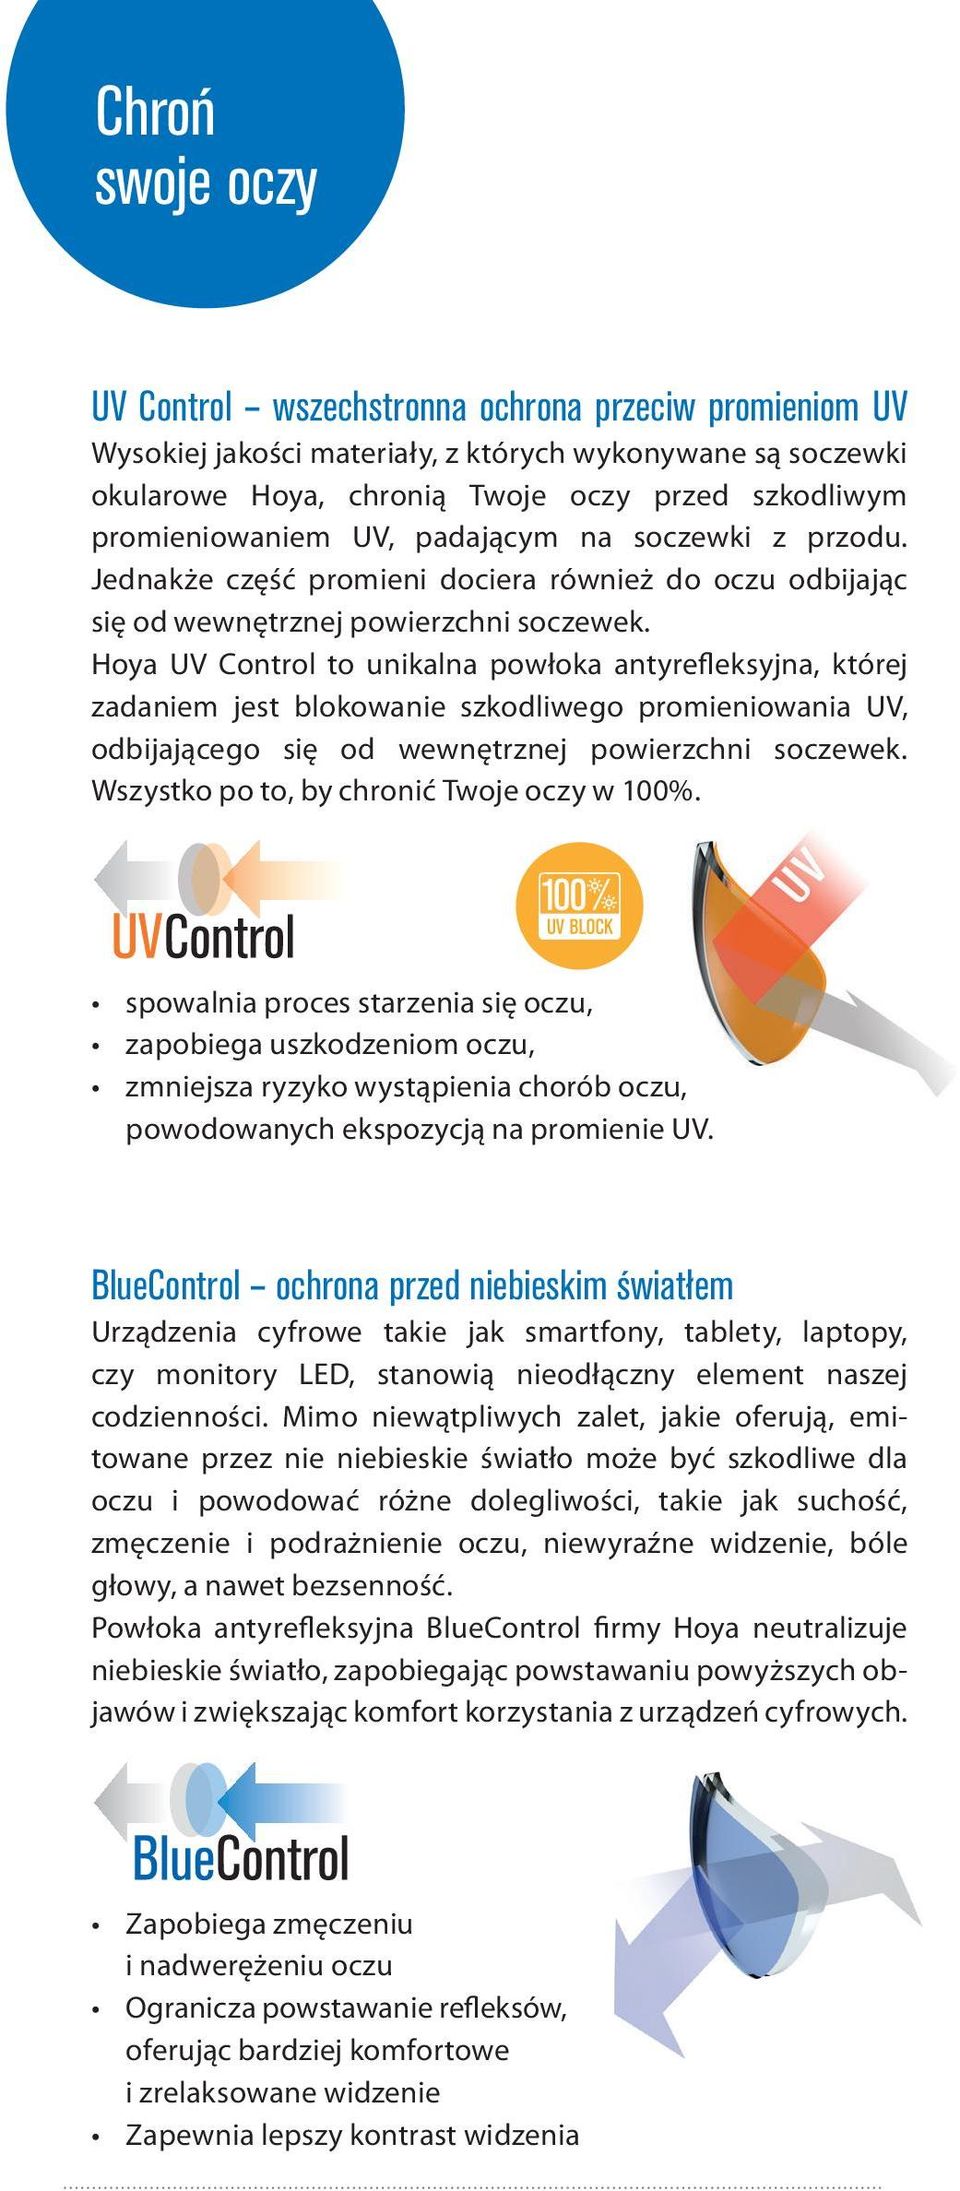 Hoya UV Control to unikalna powłoka antyrefleksyjna, której zadaniem jest blokowanie szkodliwego promieniowania UV, odbijającego się od wewnętrznej powierzchni soczewek.